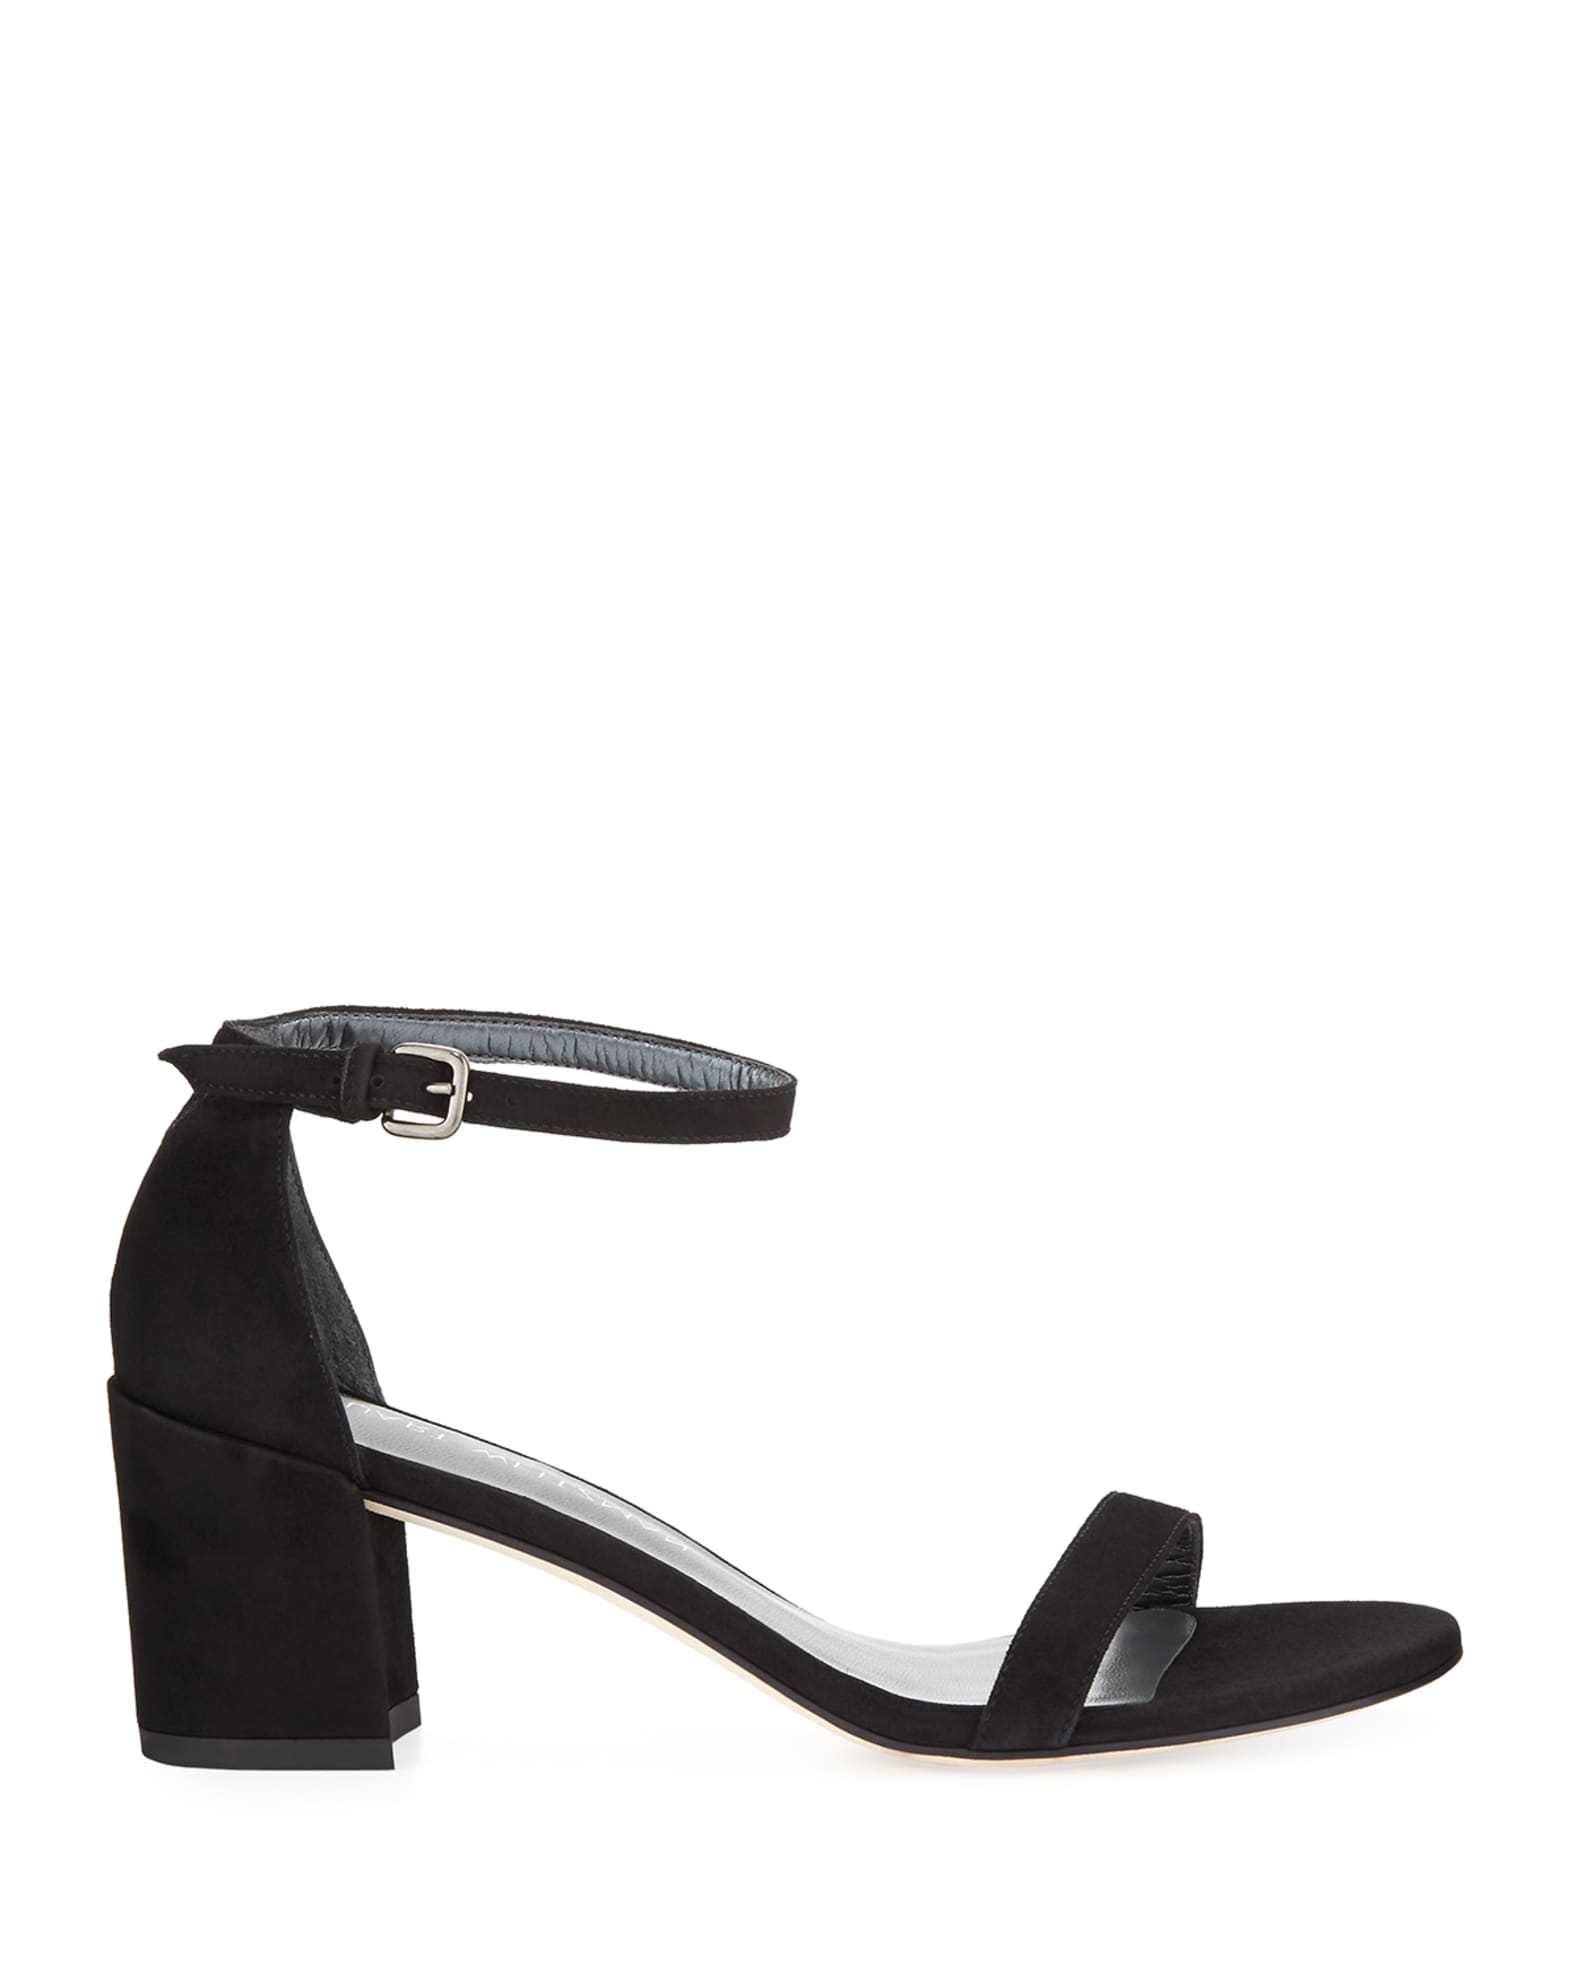 Stuart Weitzman Simple Suede Chunky-Heel City Sandals | Neiman Marcus